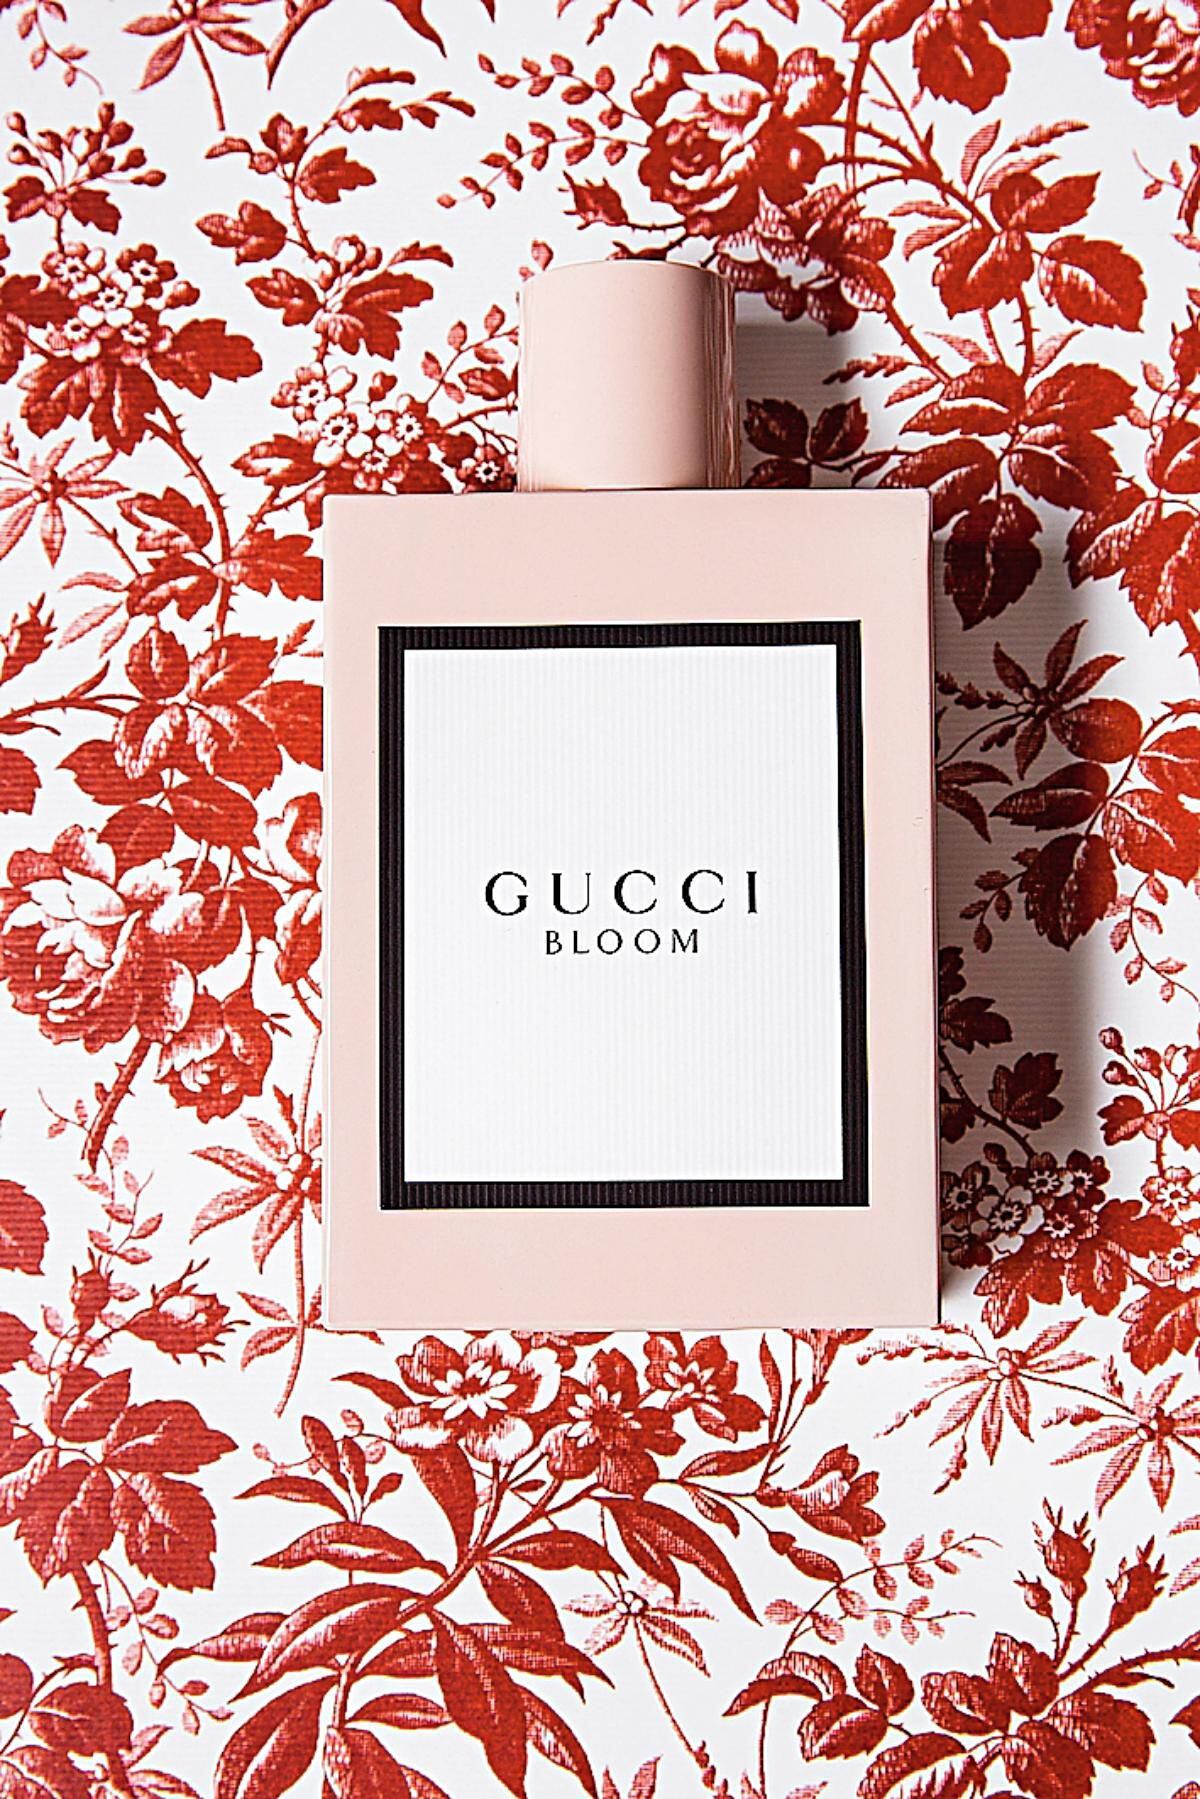 Eau de parfum Gucci Bloom de GUCCI (119 €; 100 ml).